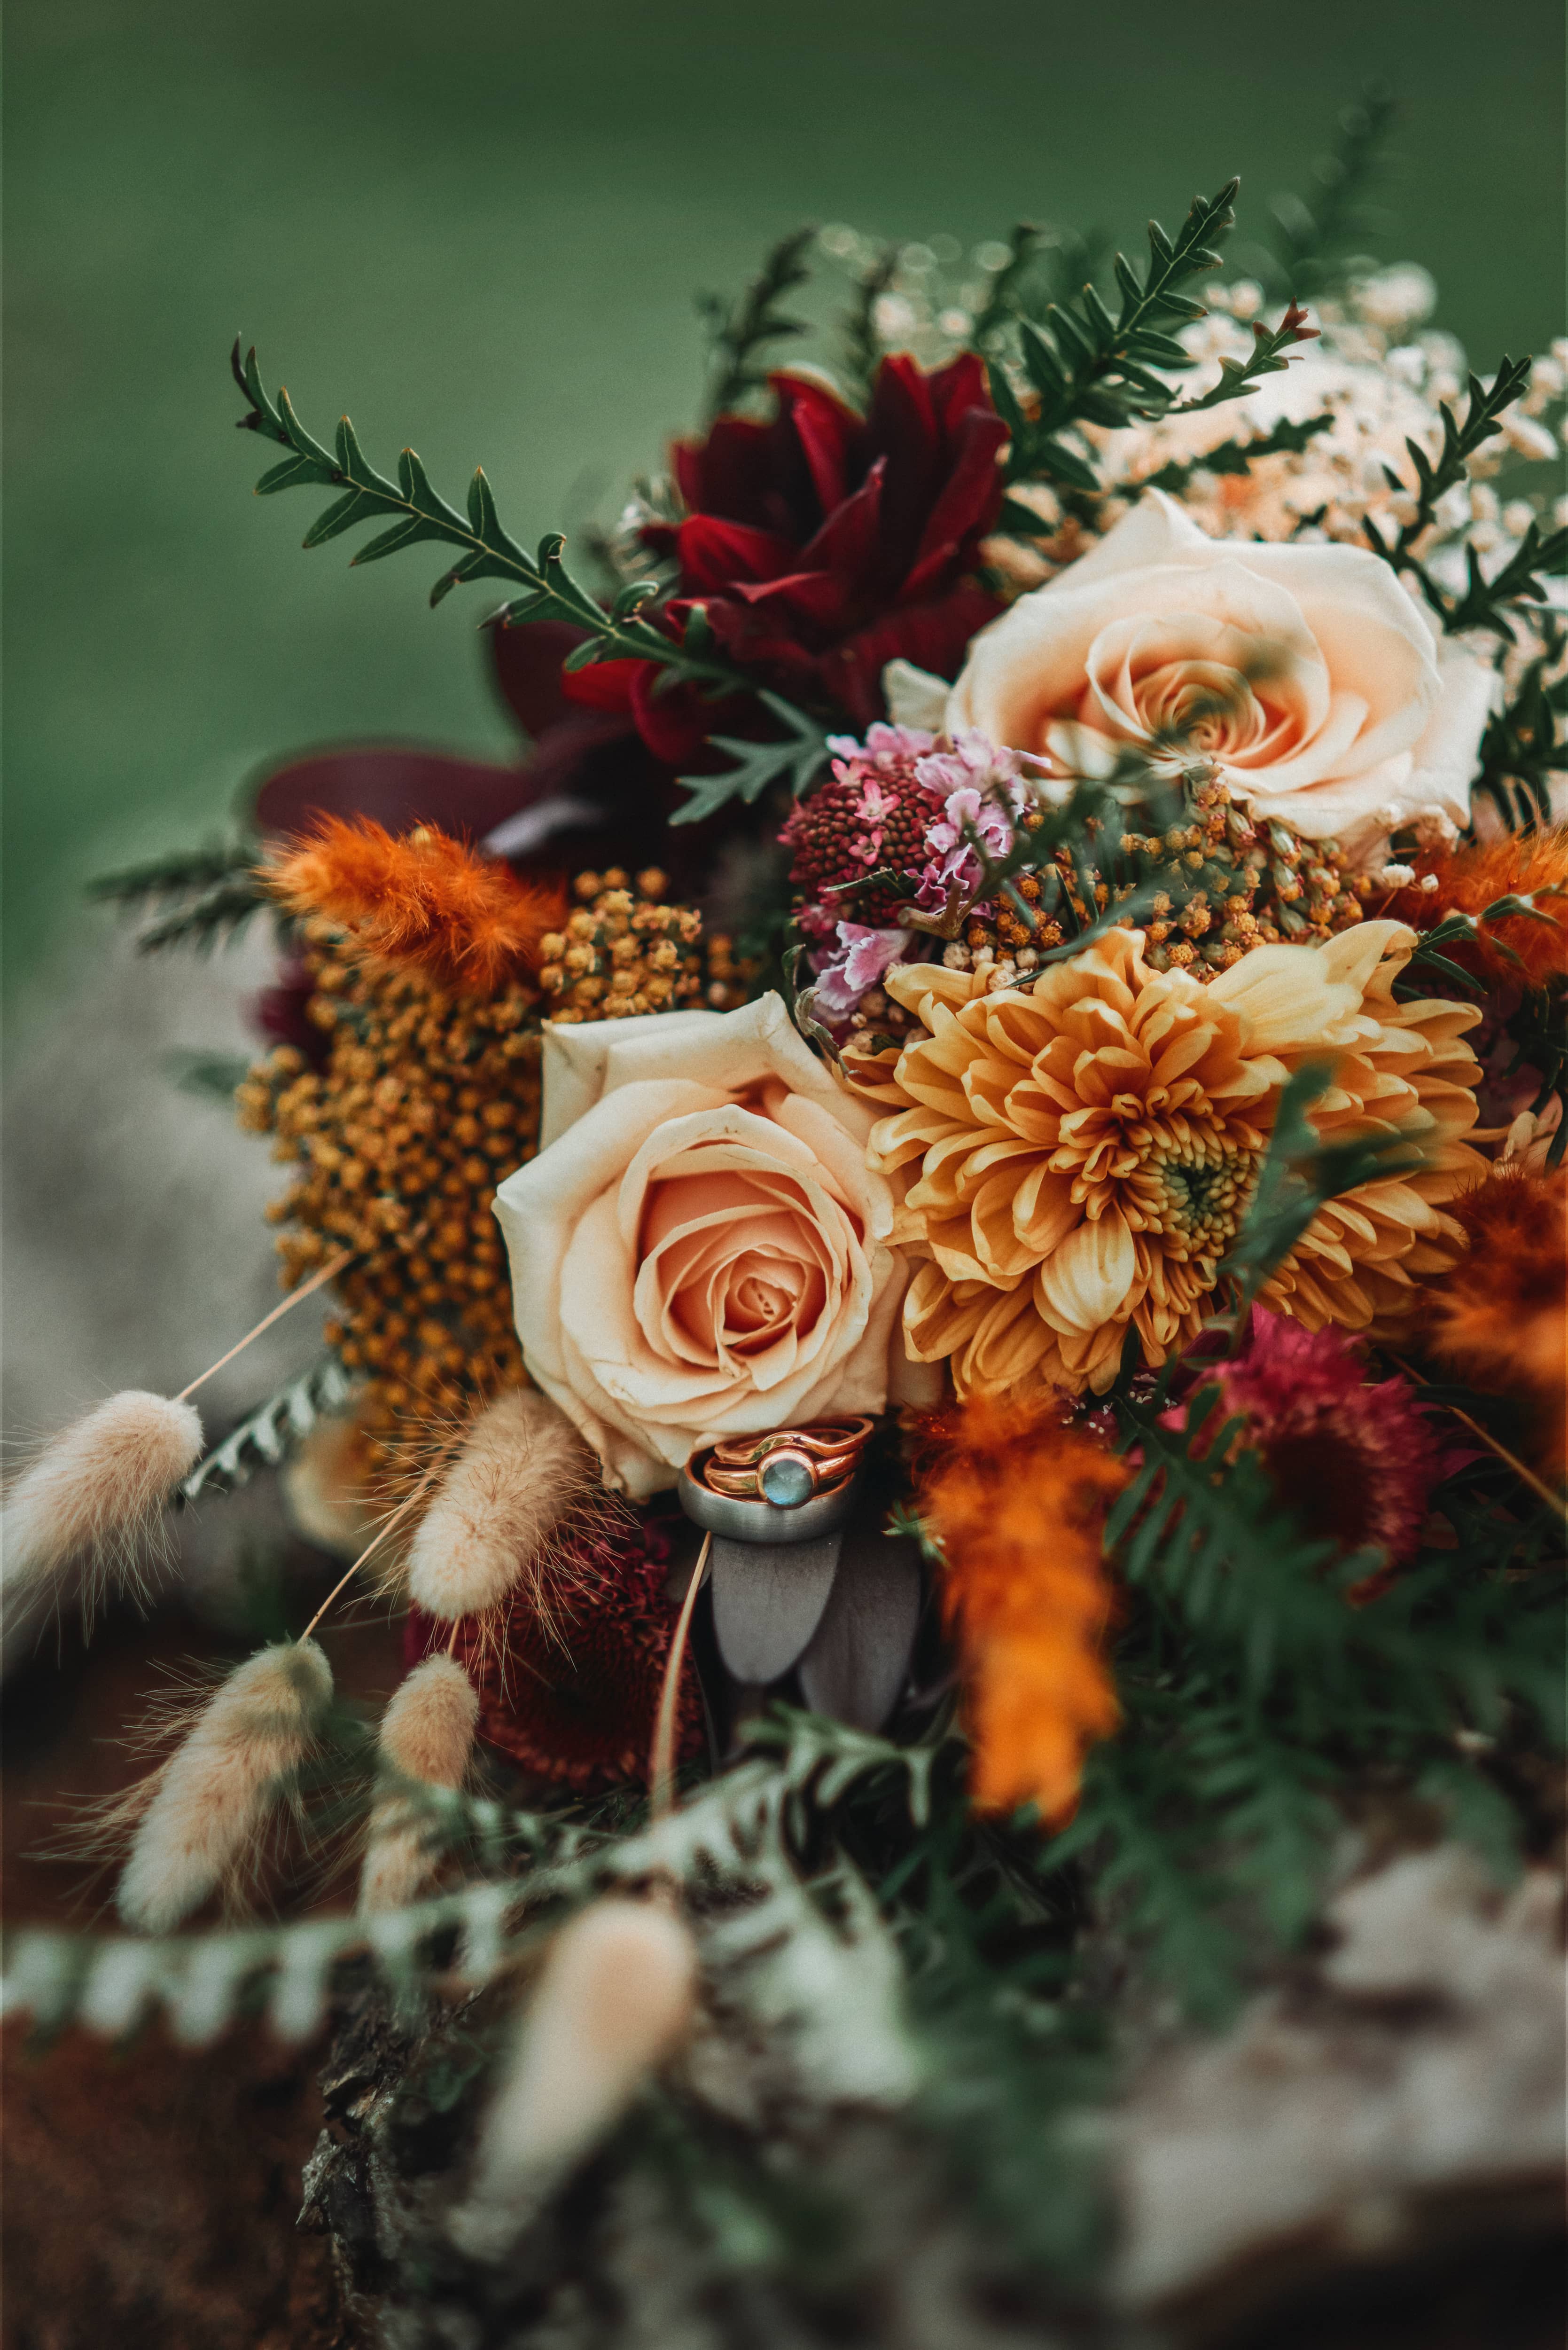 58-kezia-tan-wedding-branding-photographer-insuffolk-norfolk-essex-florist-bouquet-.jpg